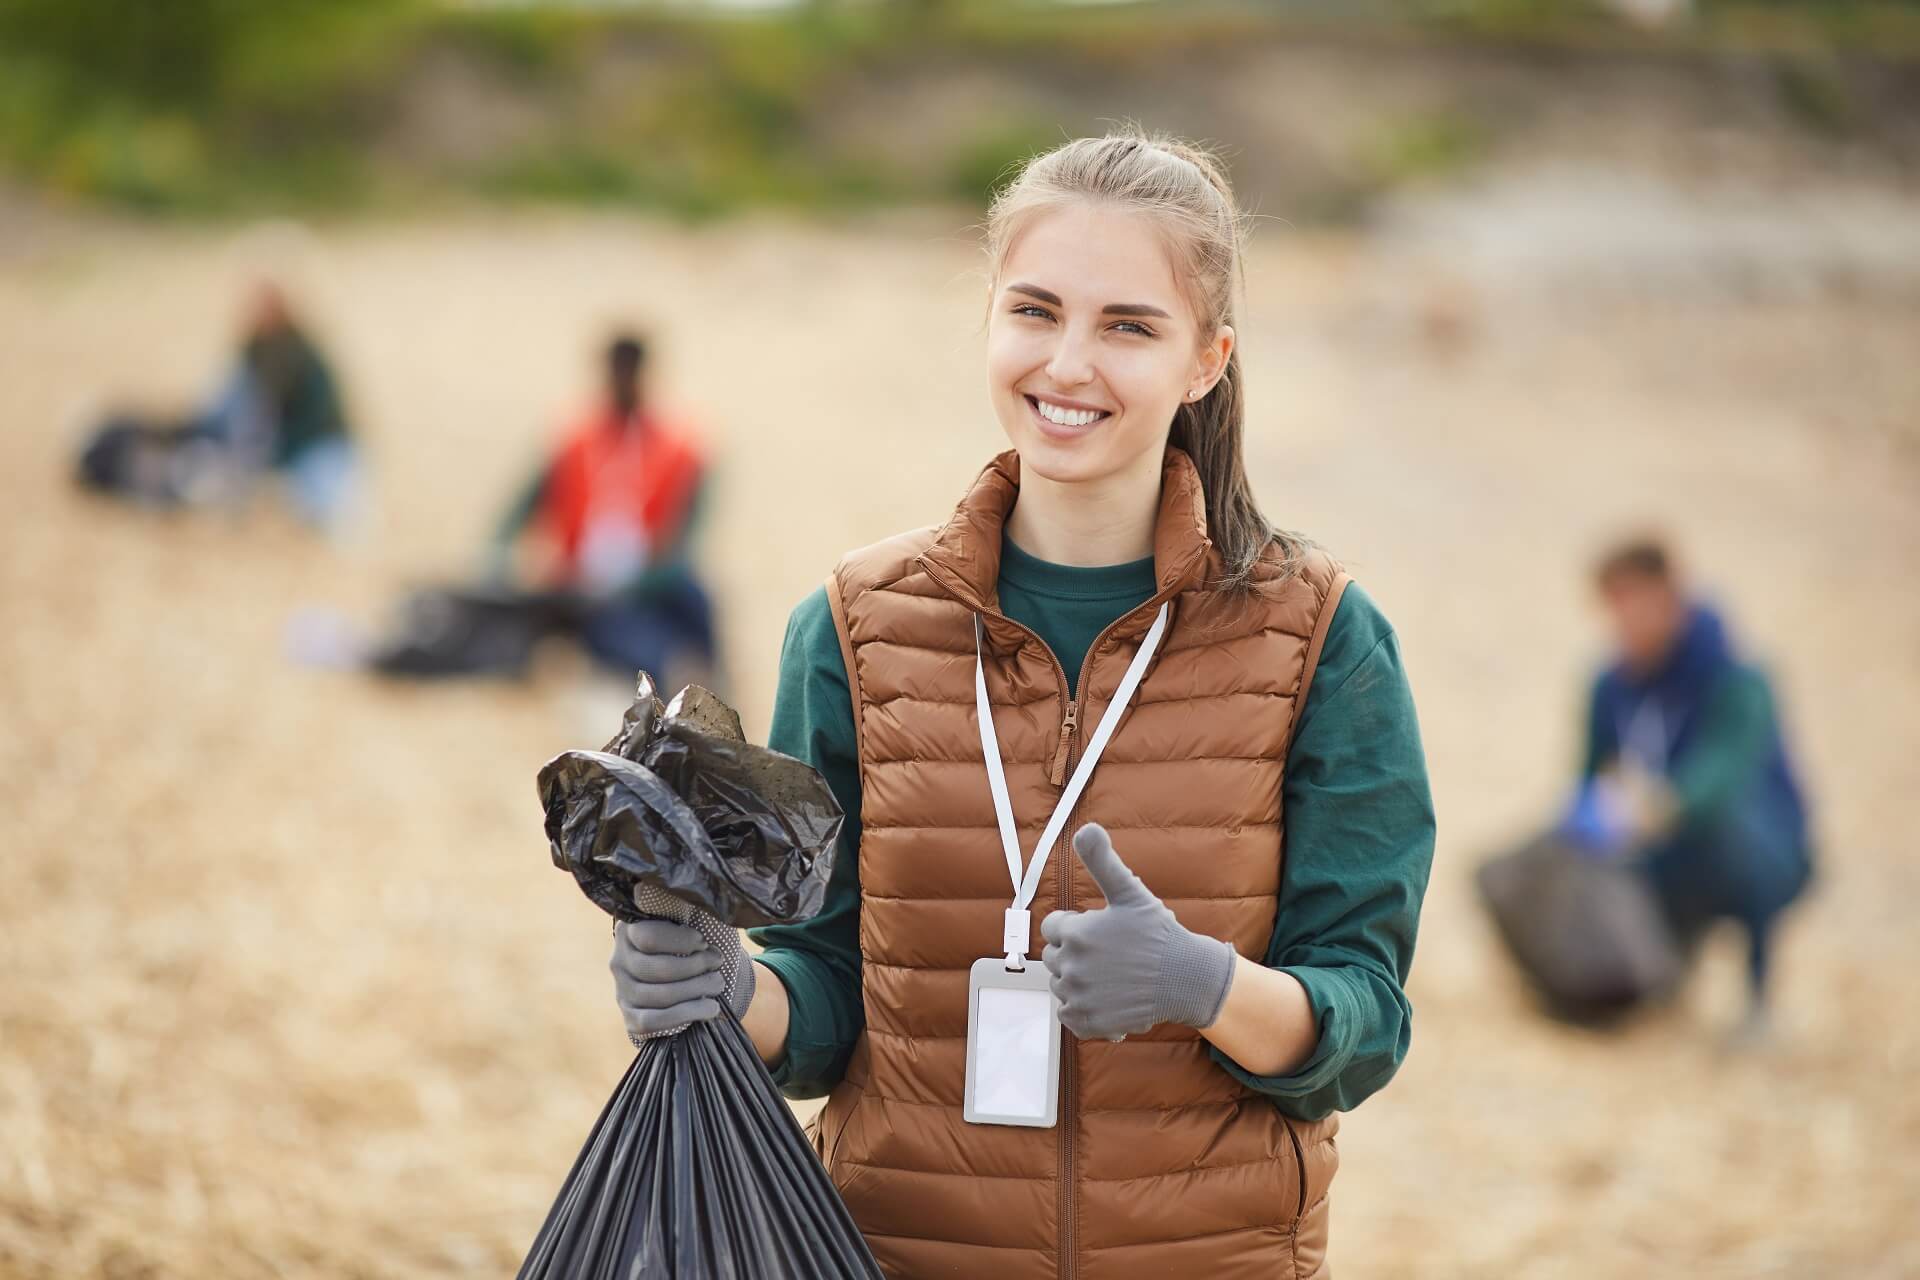 volunteer-with-garbage-outdoors-2021-08-28-11-56-56-utc